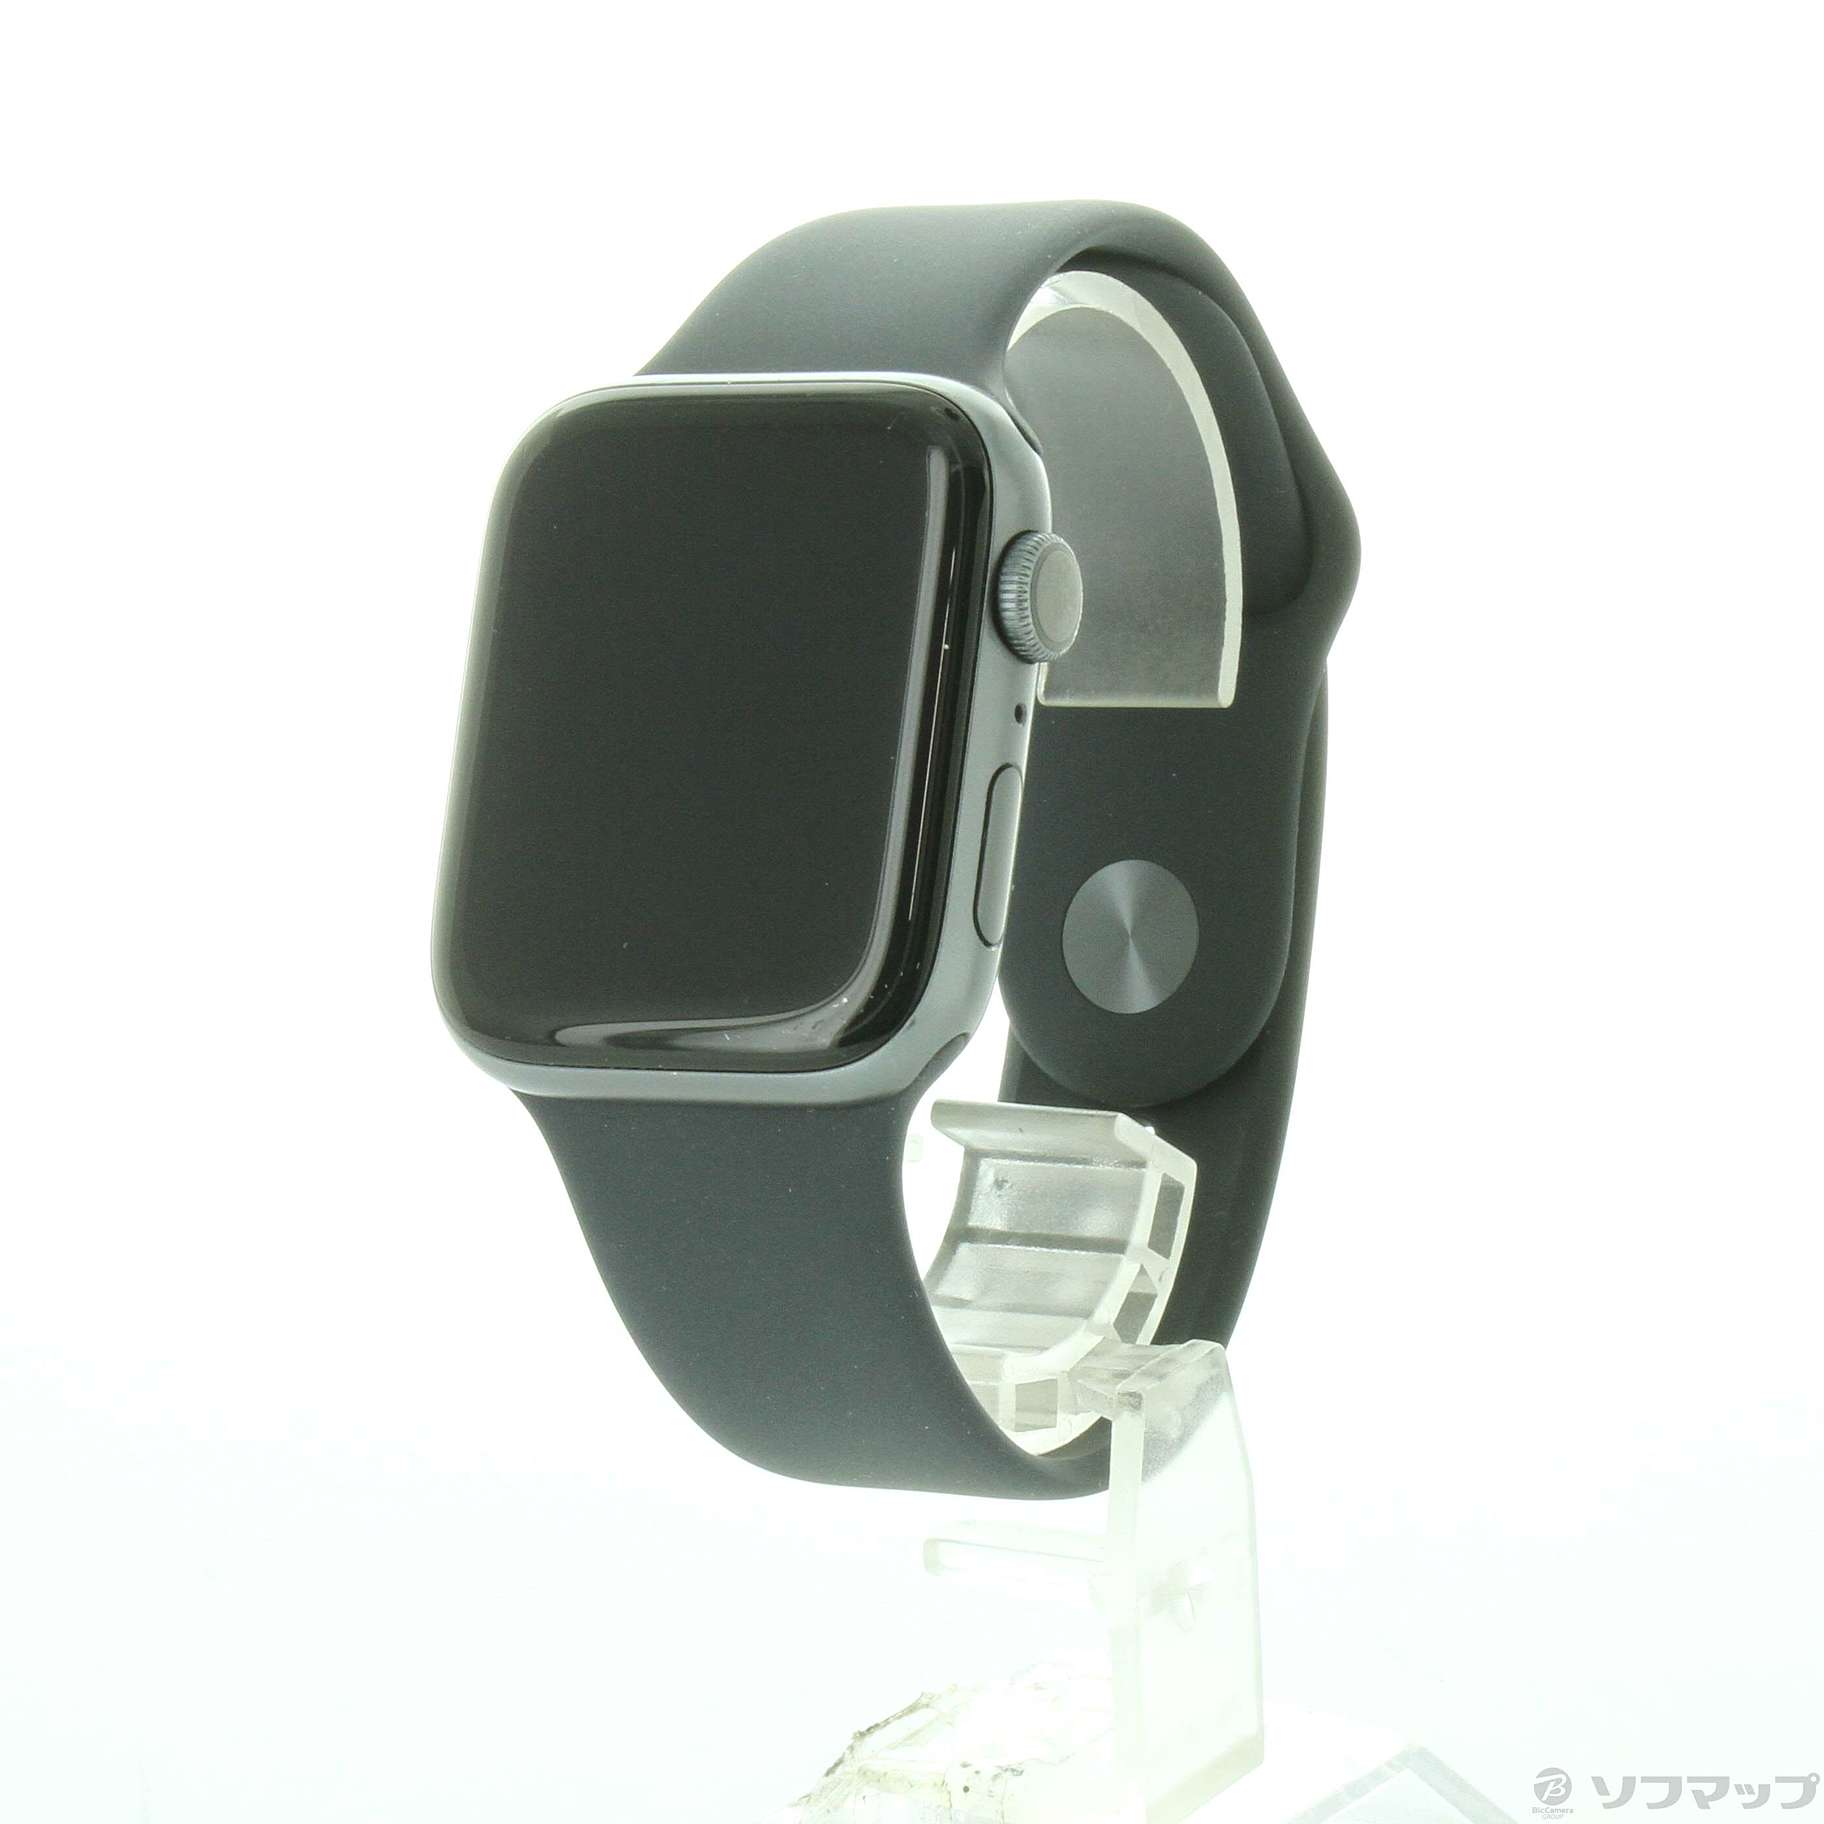 〔中古品〕 Apple Watch Series 5 GPS 44mm スペースグレイアルミニウムケース ブラックスポーツバンド